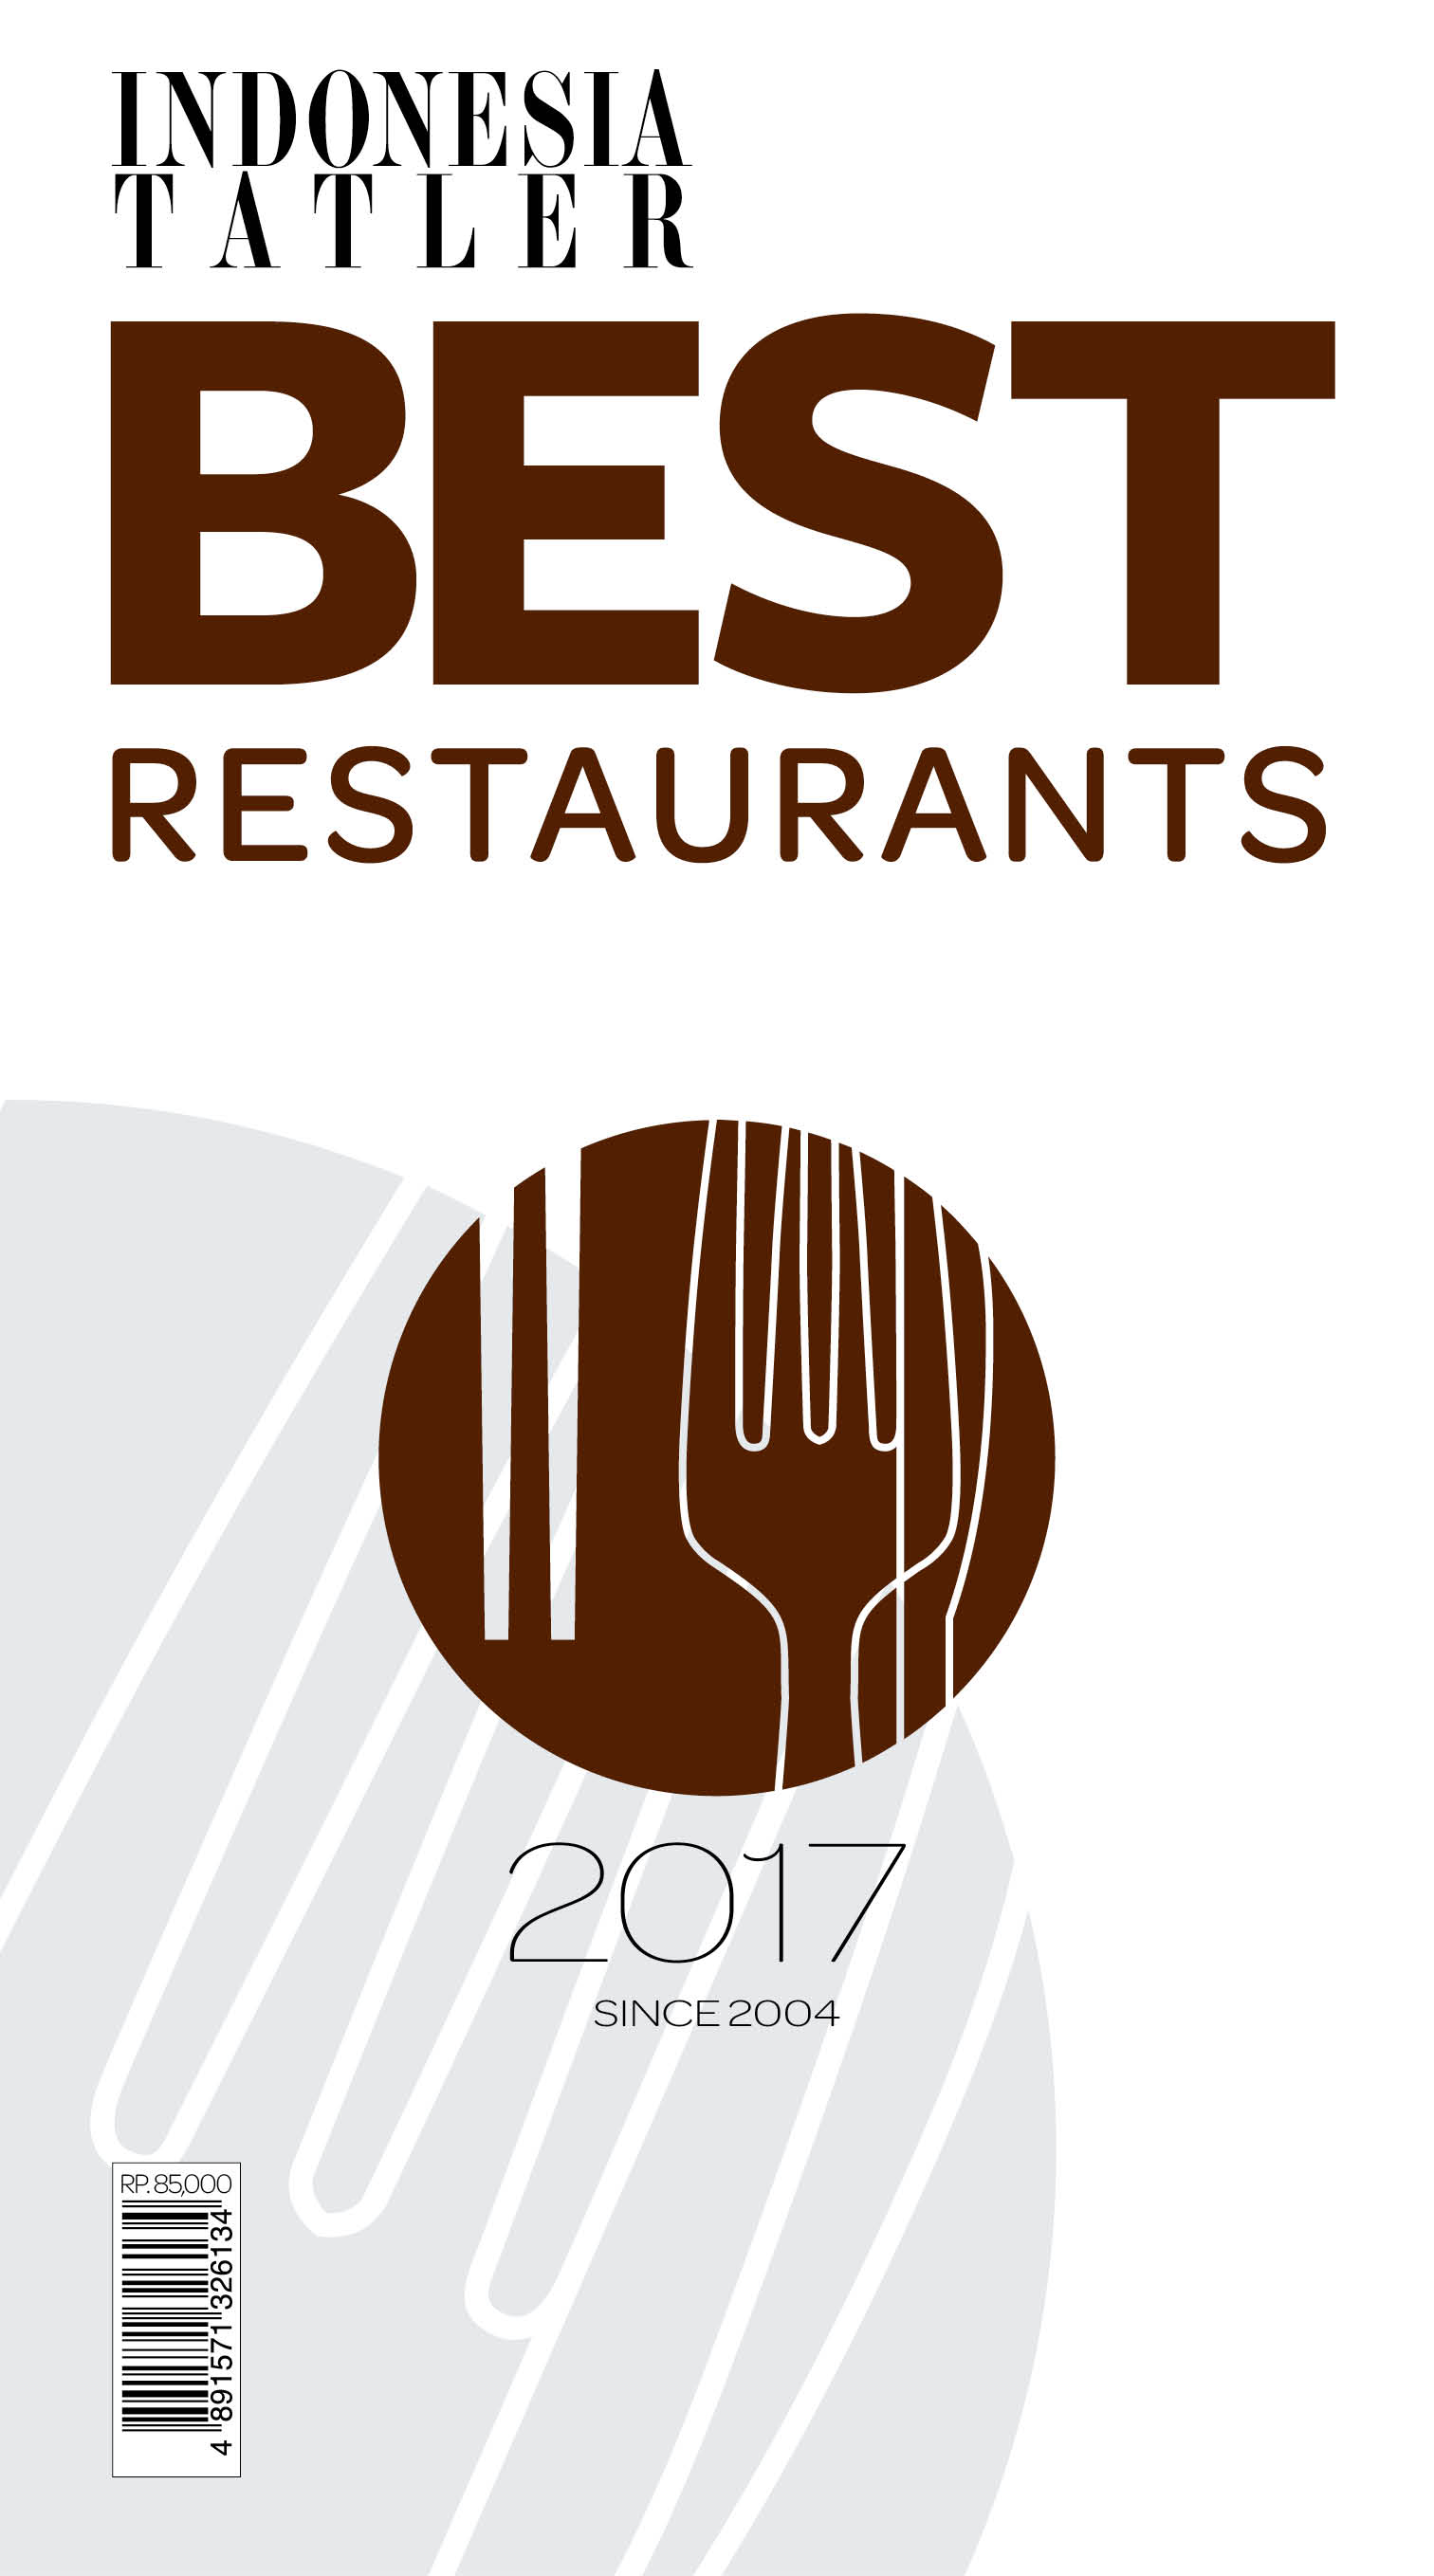 Indonesia Tatler Best Restaurant 2017